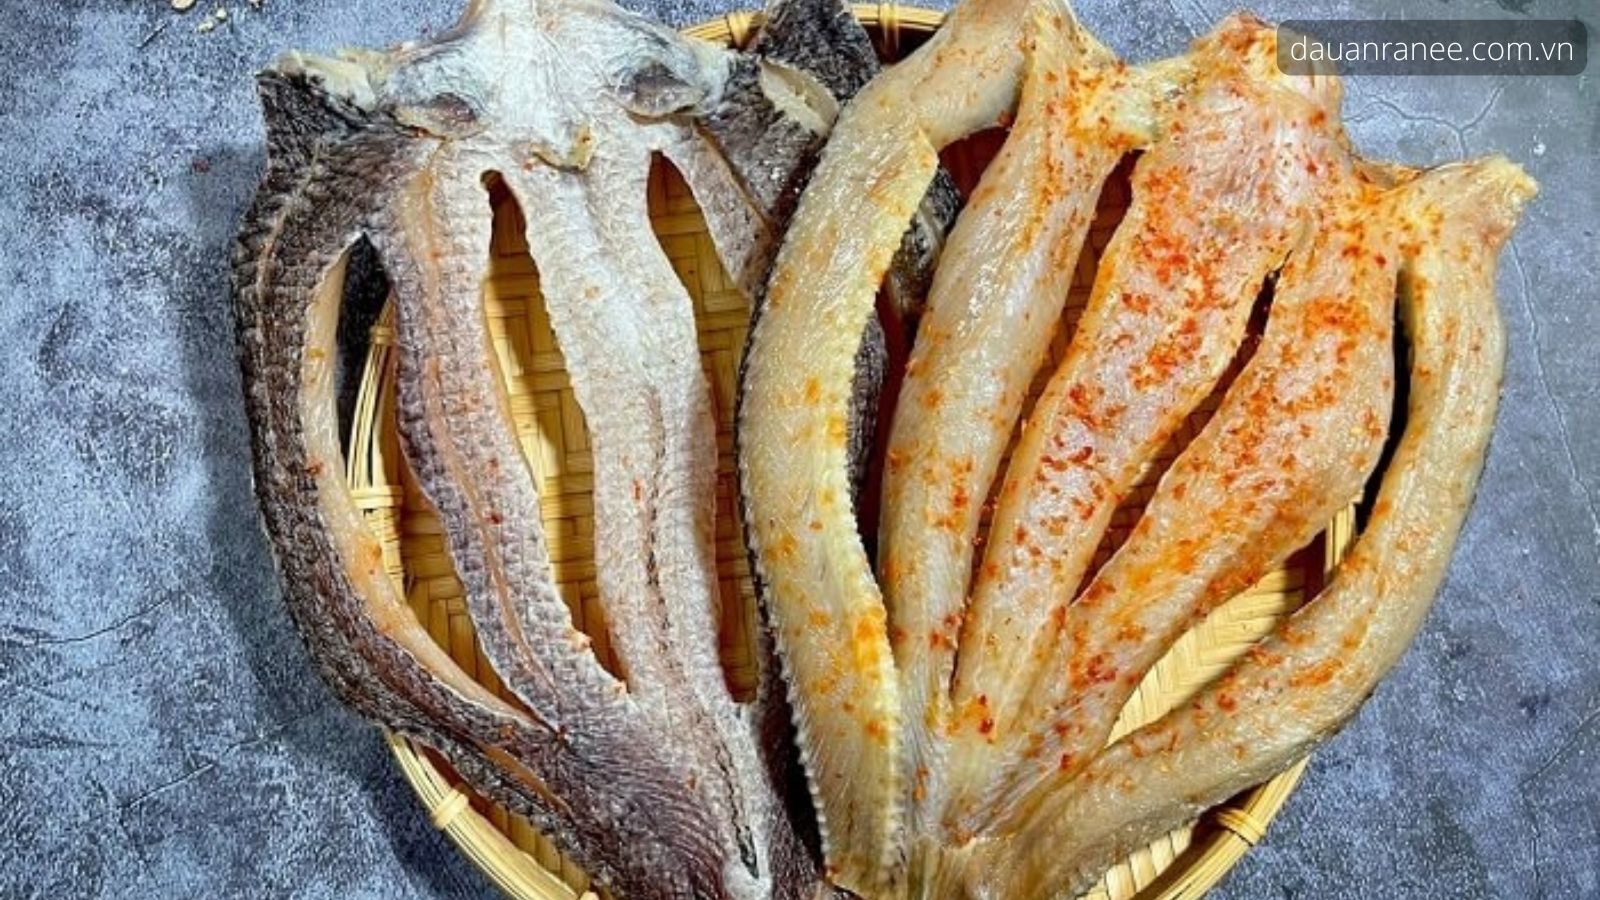 Khô cá lóc Bạc Liêu hương vị đặc trưng